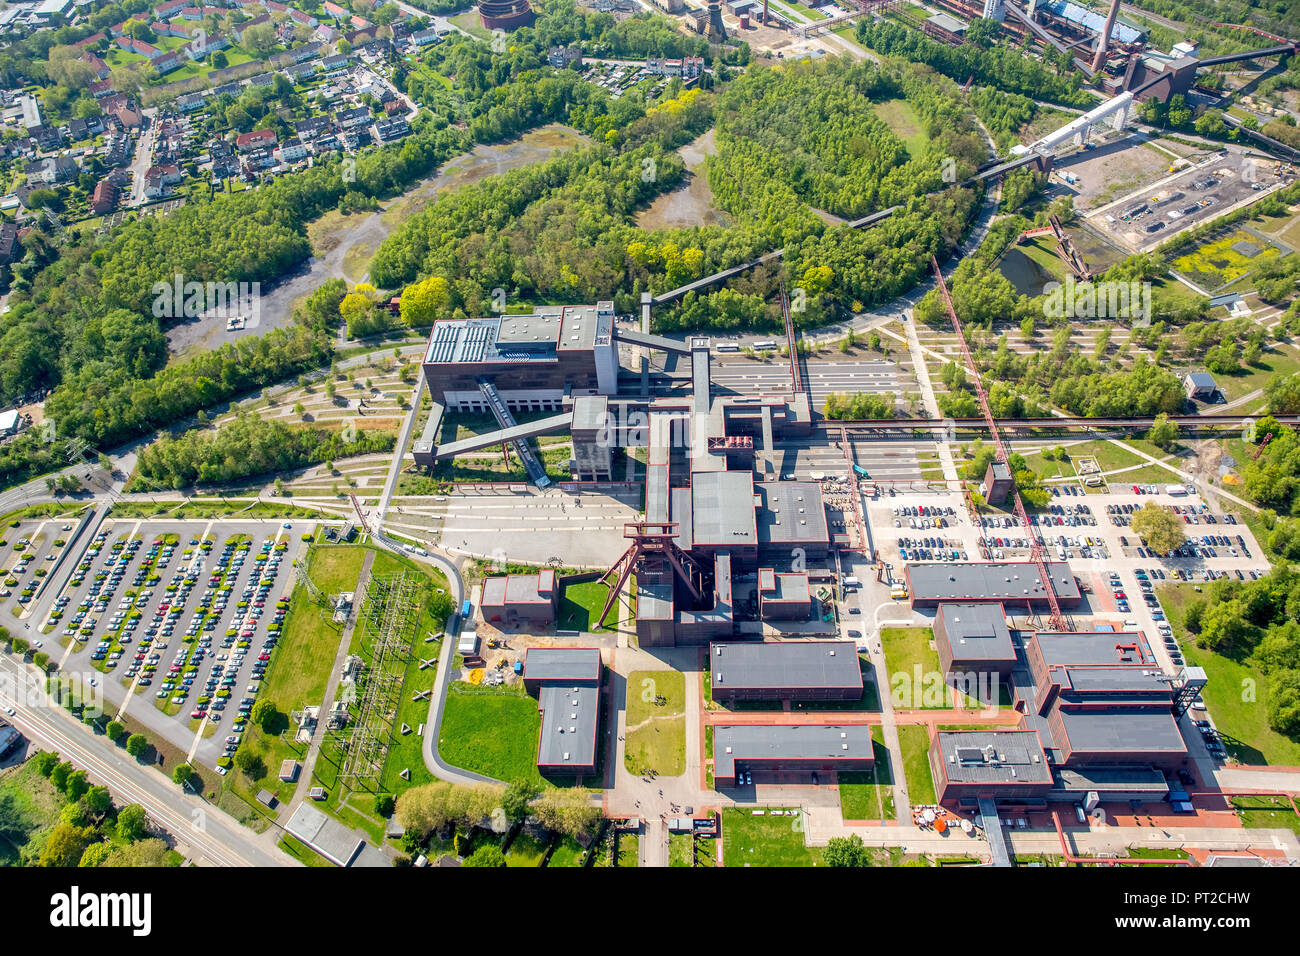 L'Héritage Culturel Mondial, Zollverein Zeche Zollverein, Essen, Ruhr, Nordrhein-Westfalen, Germany, Europe Banque D'Images